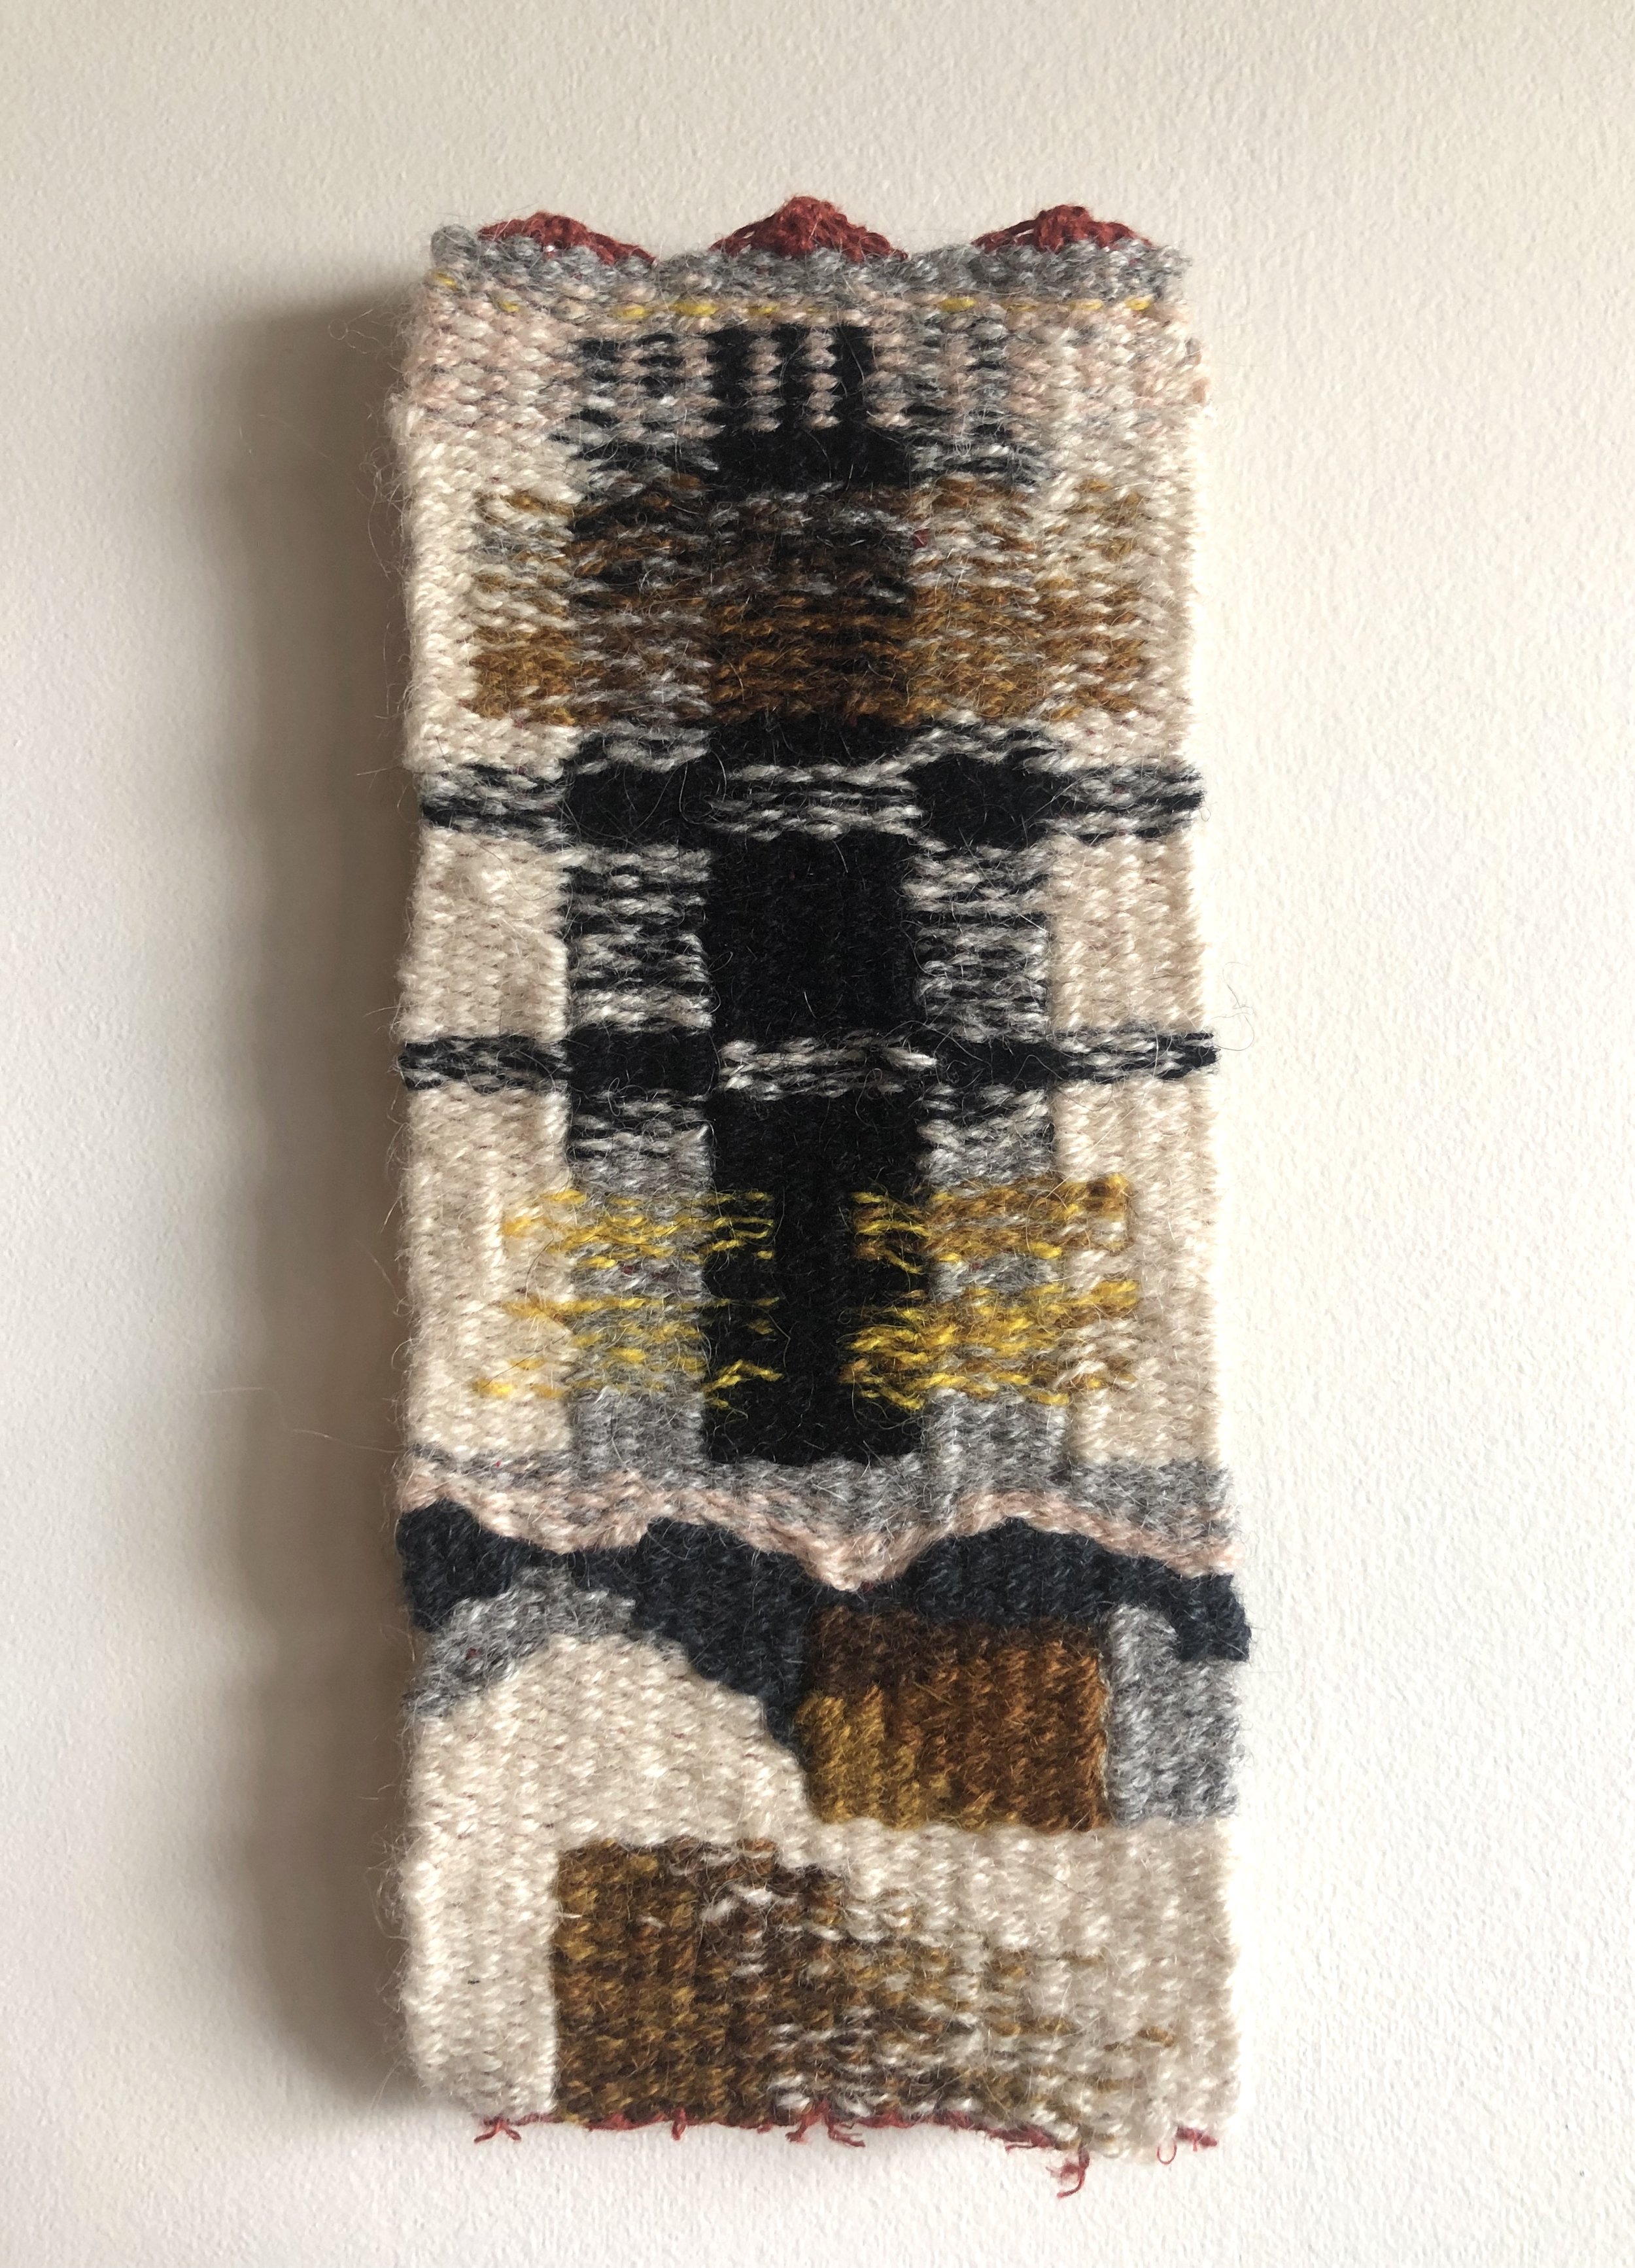   Transparency Sample II , 2019. Linen warp, wool weft. 4.5” x 10”. 